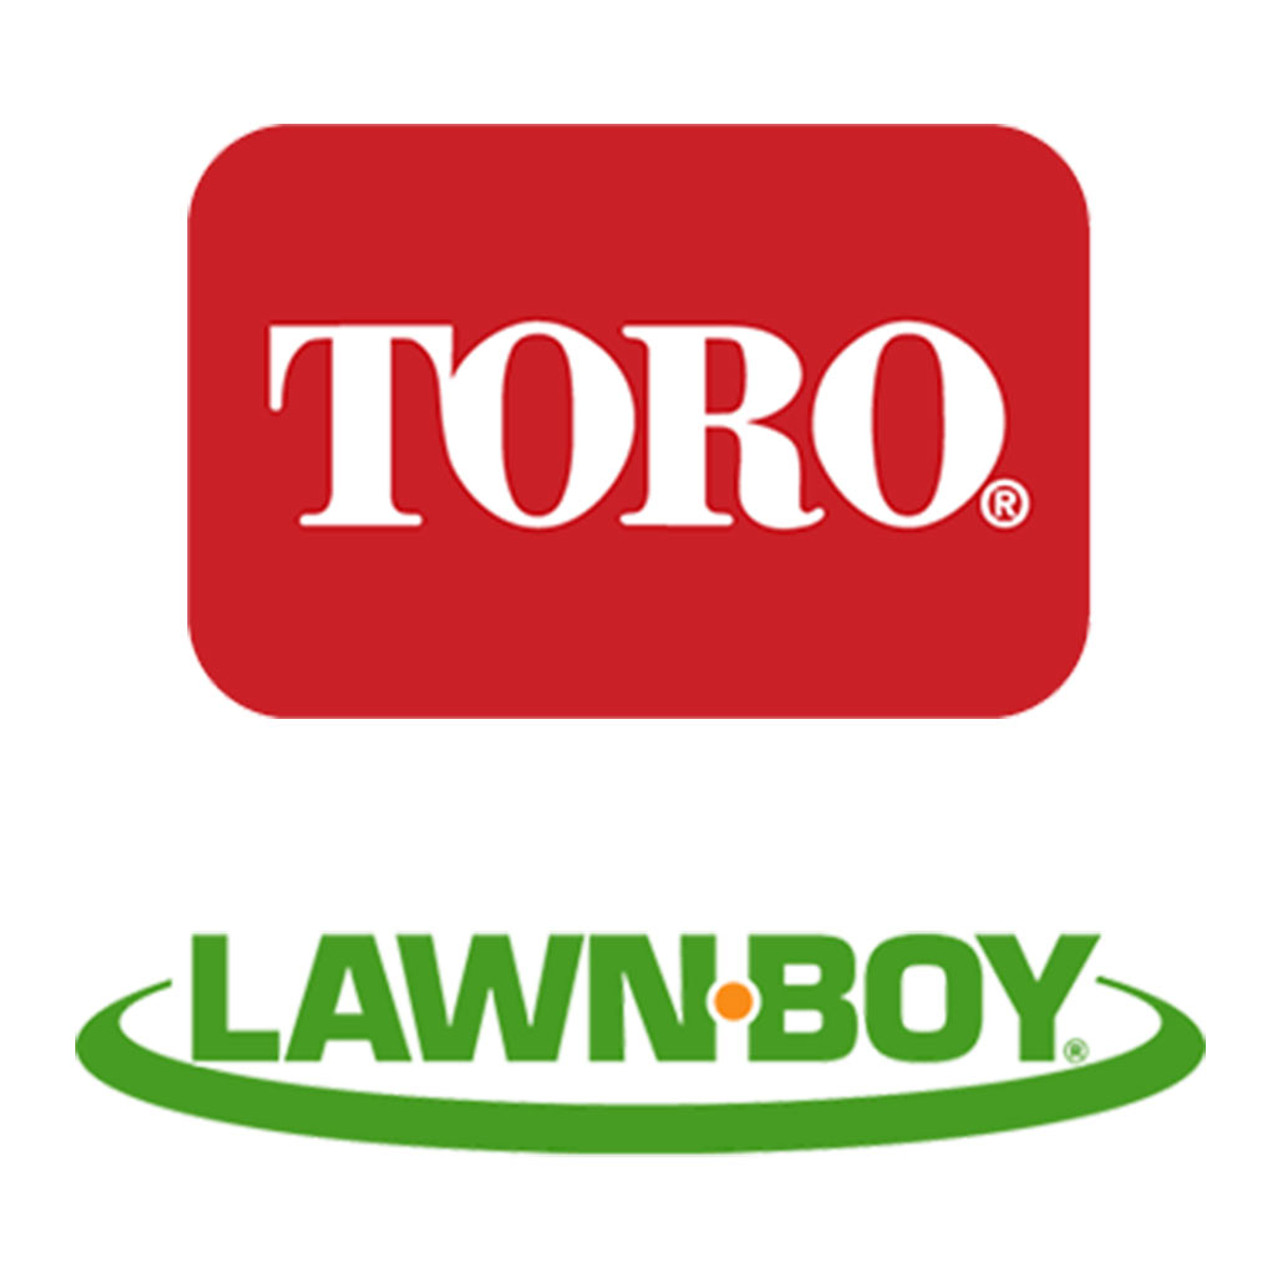 Toro Lawn-Boy 283-71 Pin-Lynch